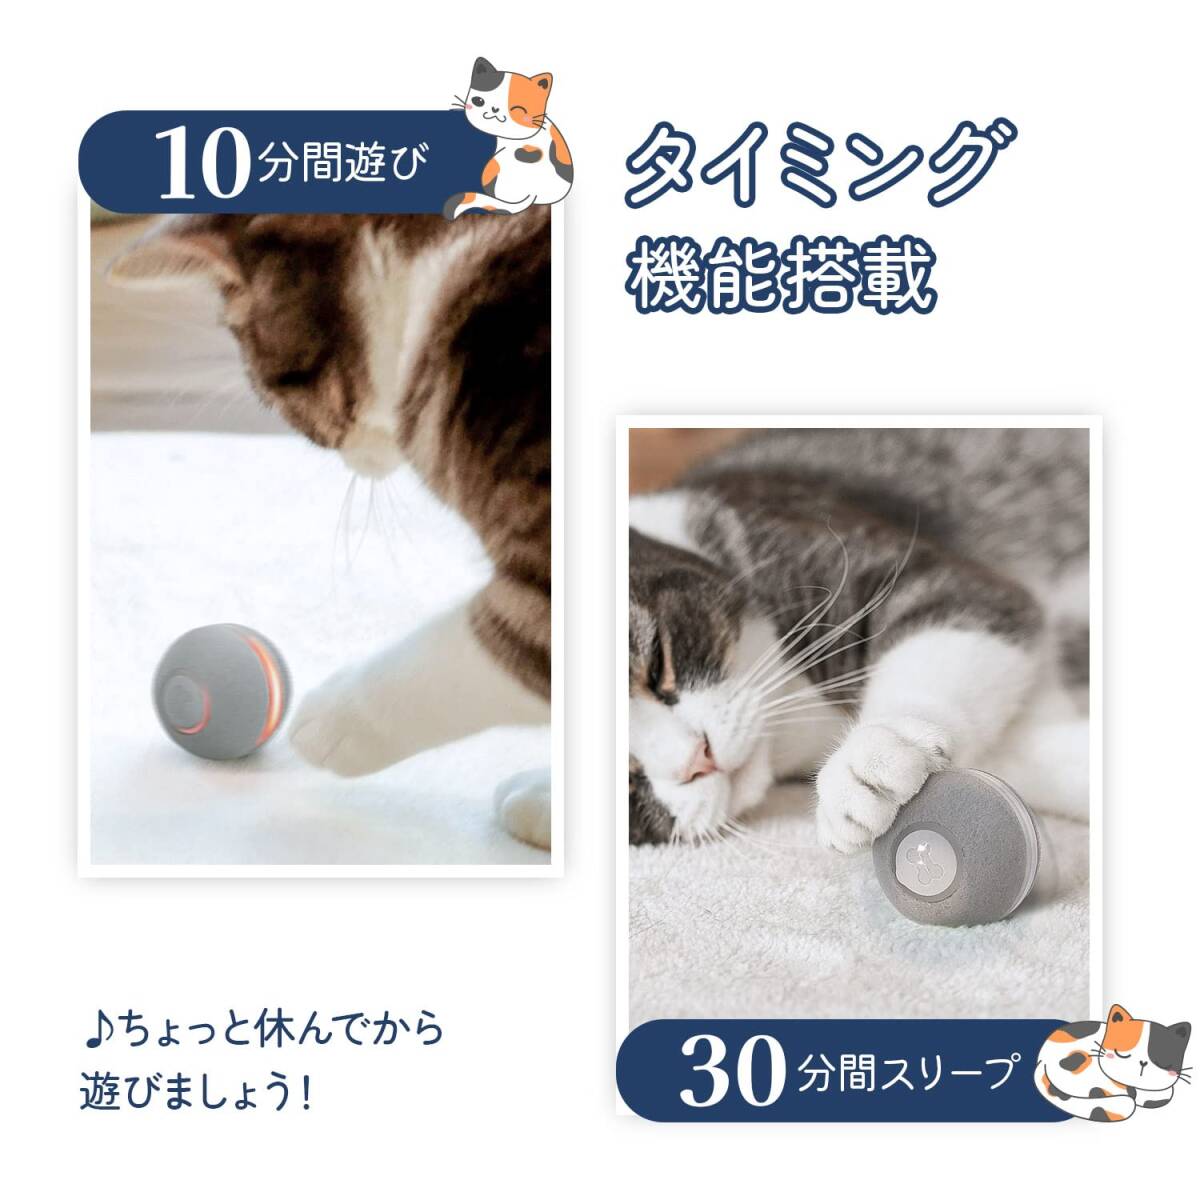 * кошка игрушка мяч новинка! пользователь популярность продолжительный срок службы specification 